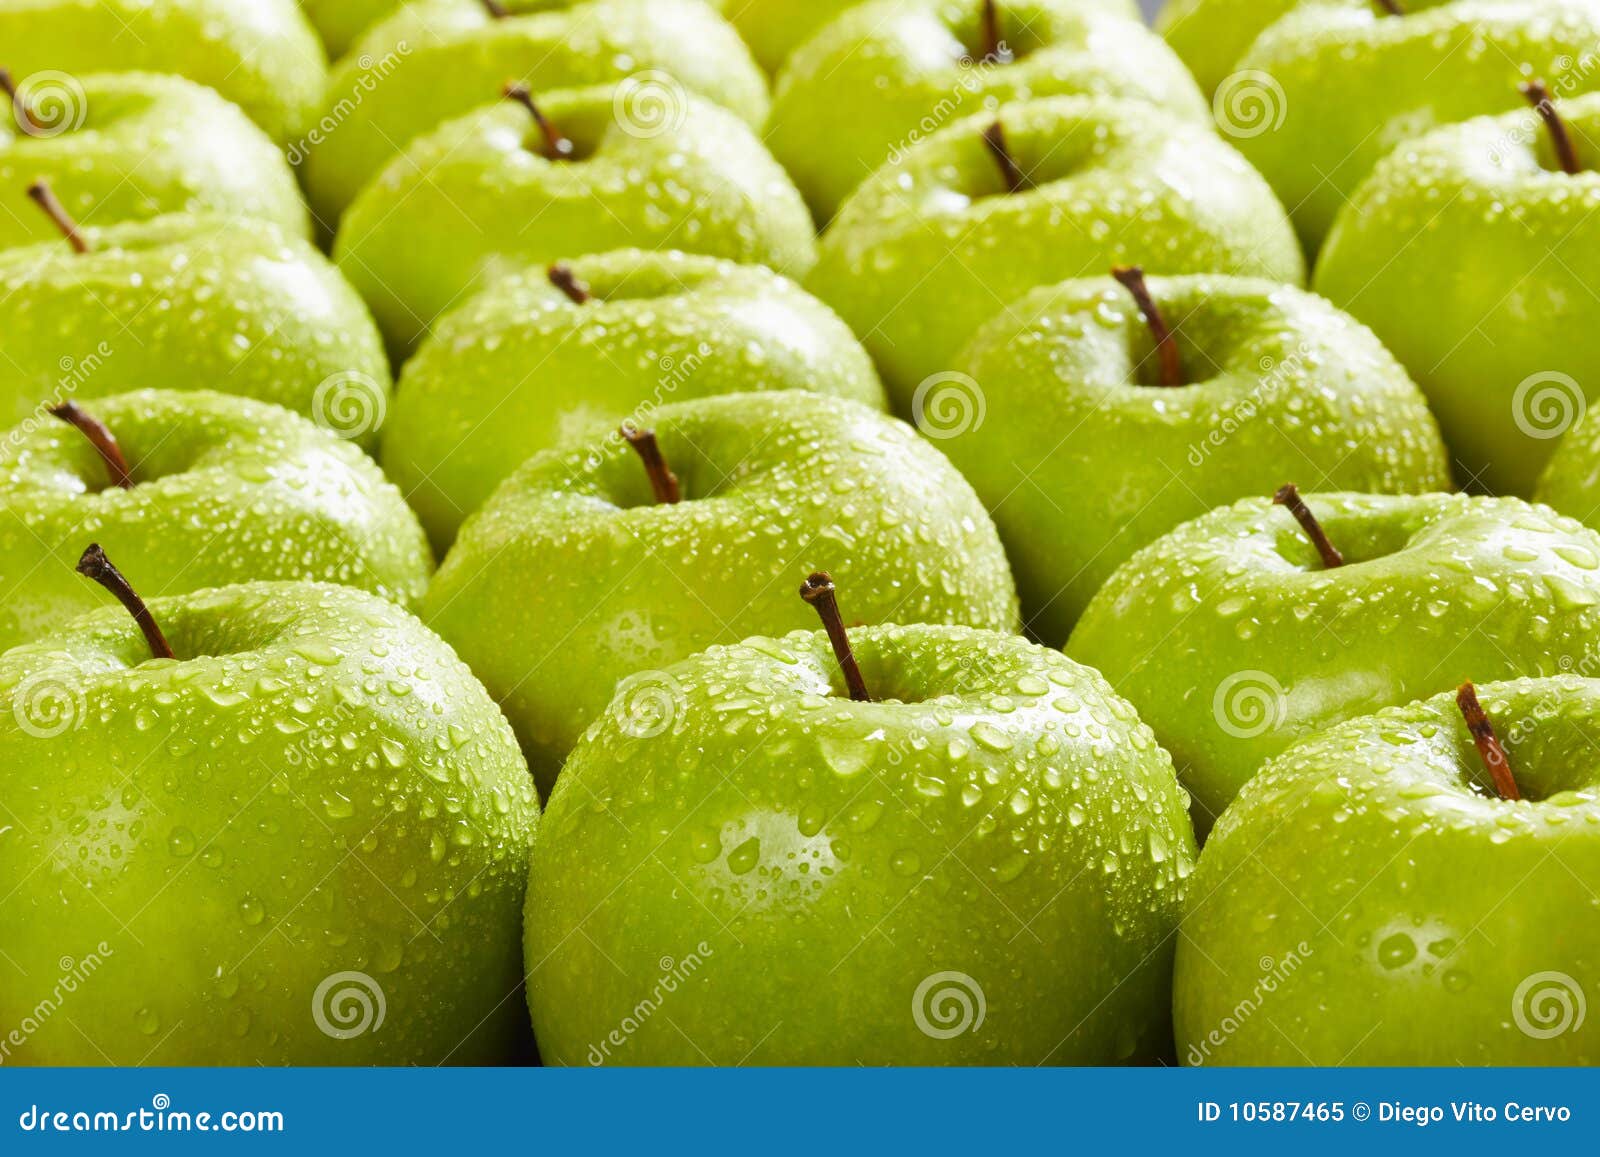 μήλα πράσινα. μεγάλη σειρά εκλεκτικό Smith ομάδας γιαγιάδων εστίασης μήλων